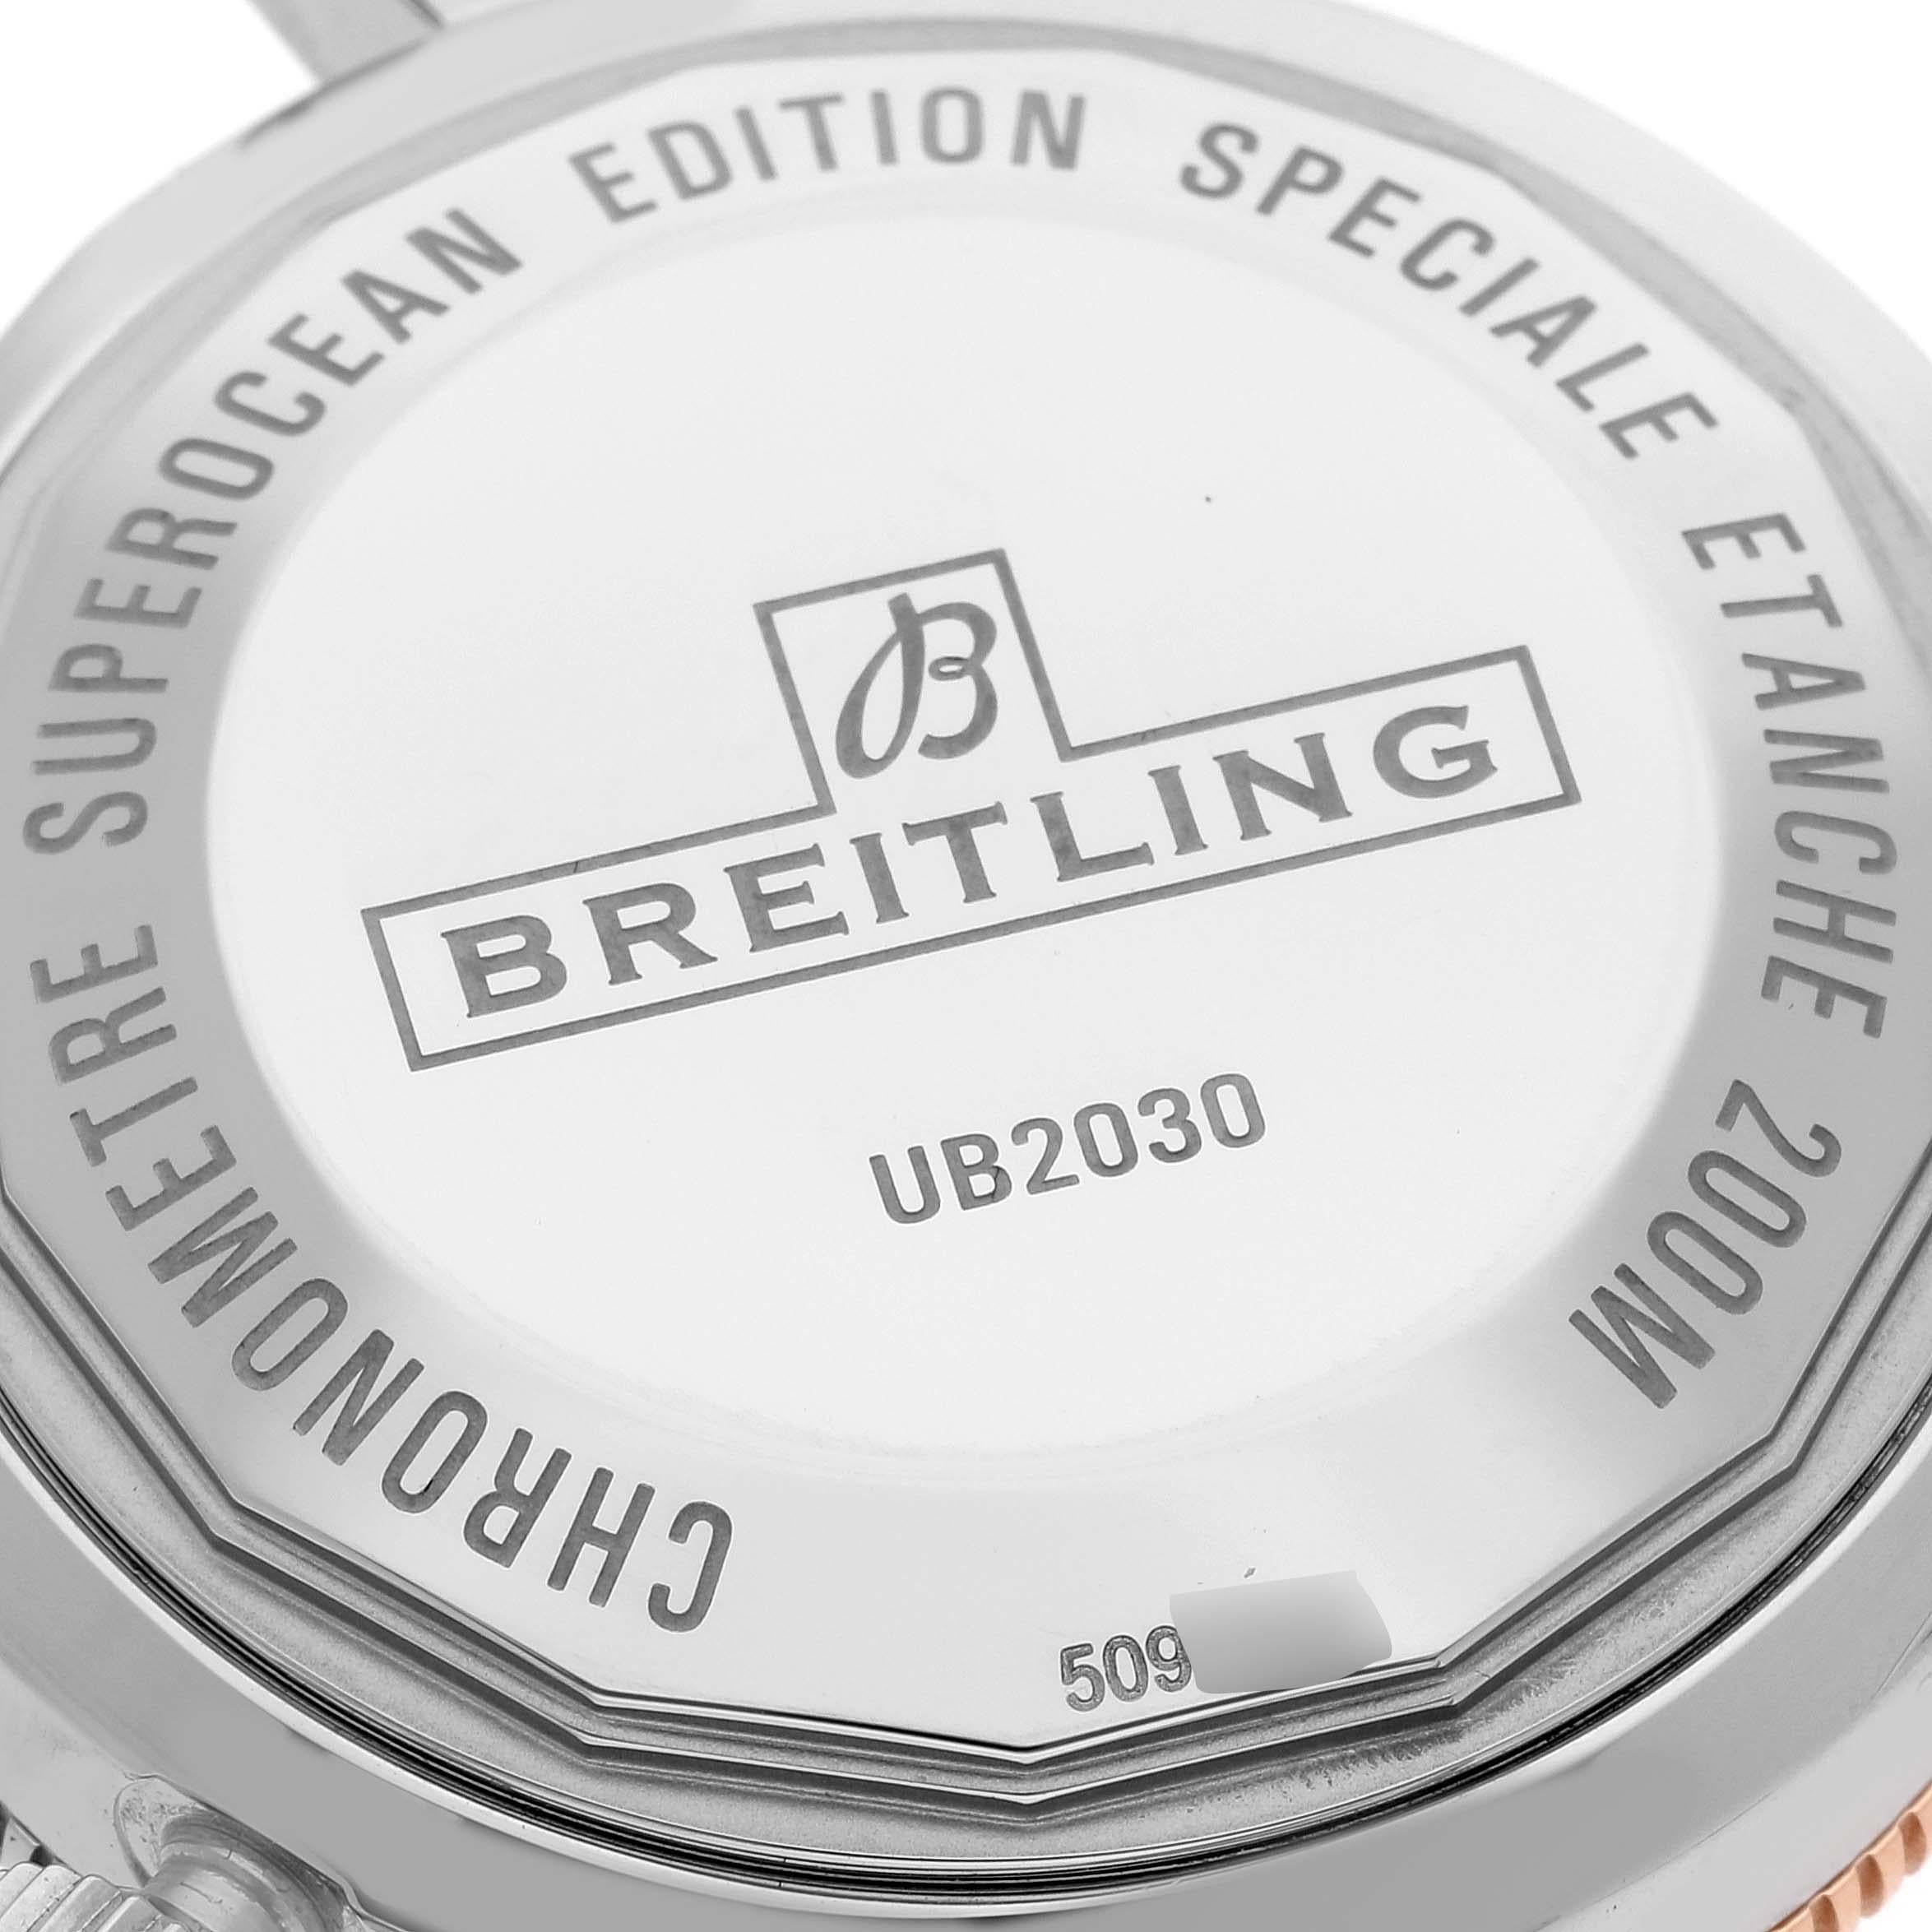 Breitling Superocean Heritage B20 Steel Rose Gold Mens Watch UB2030 Unworn 2